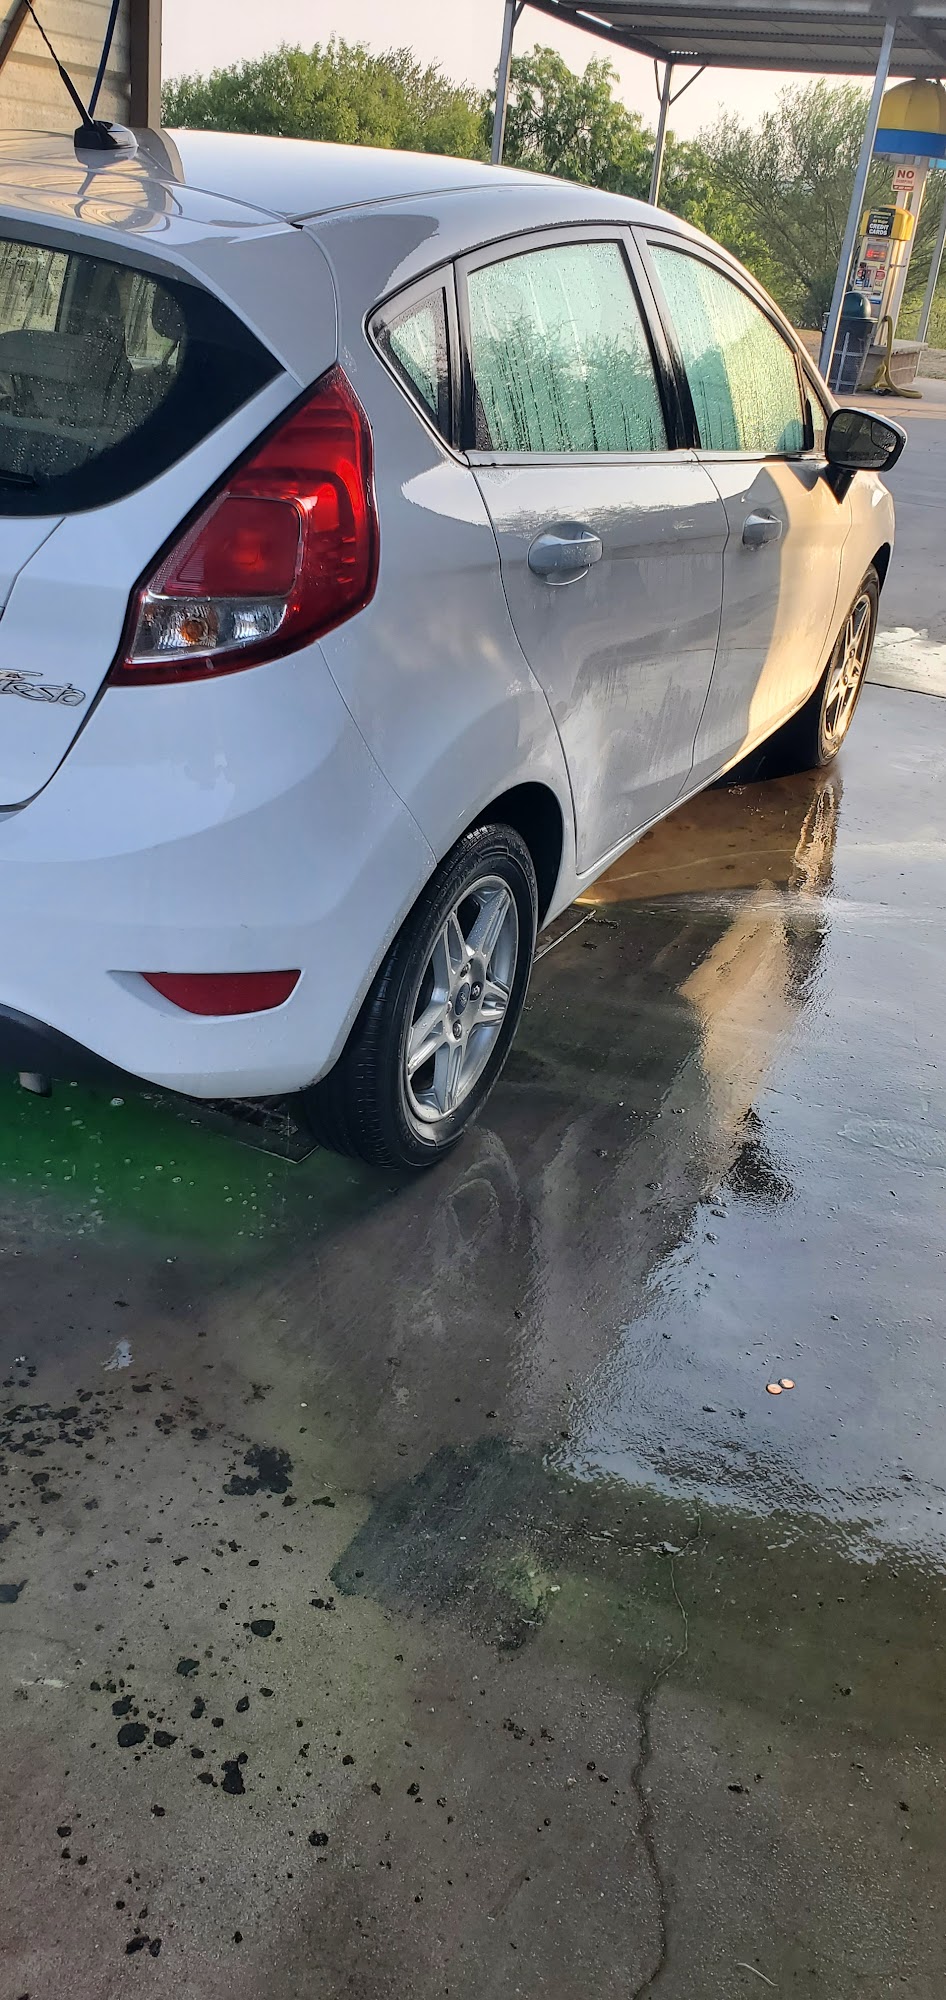 G.M's Car Wash